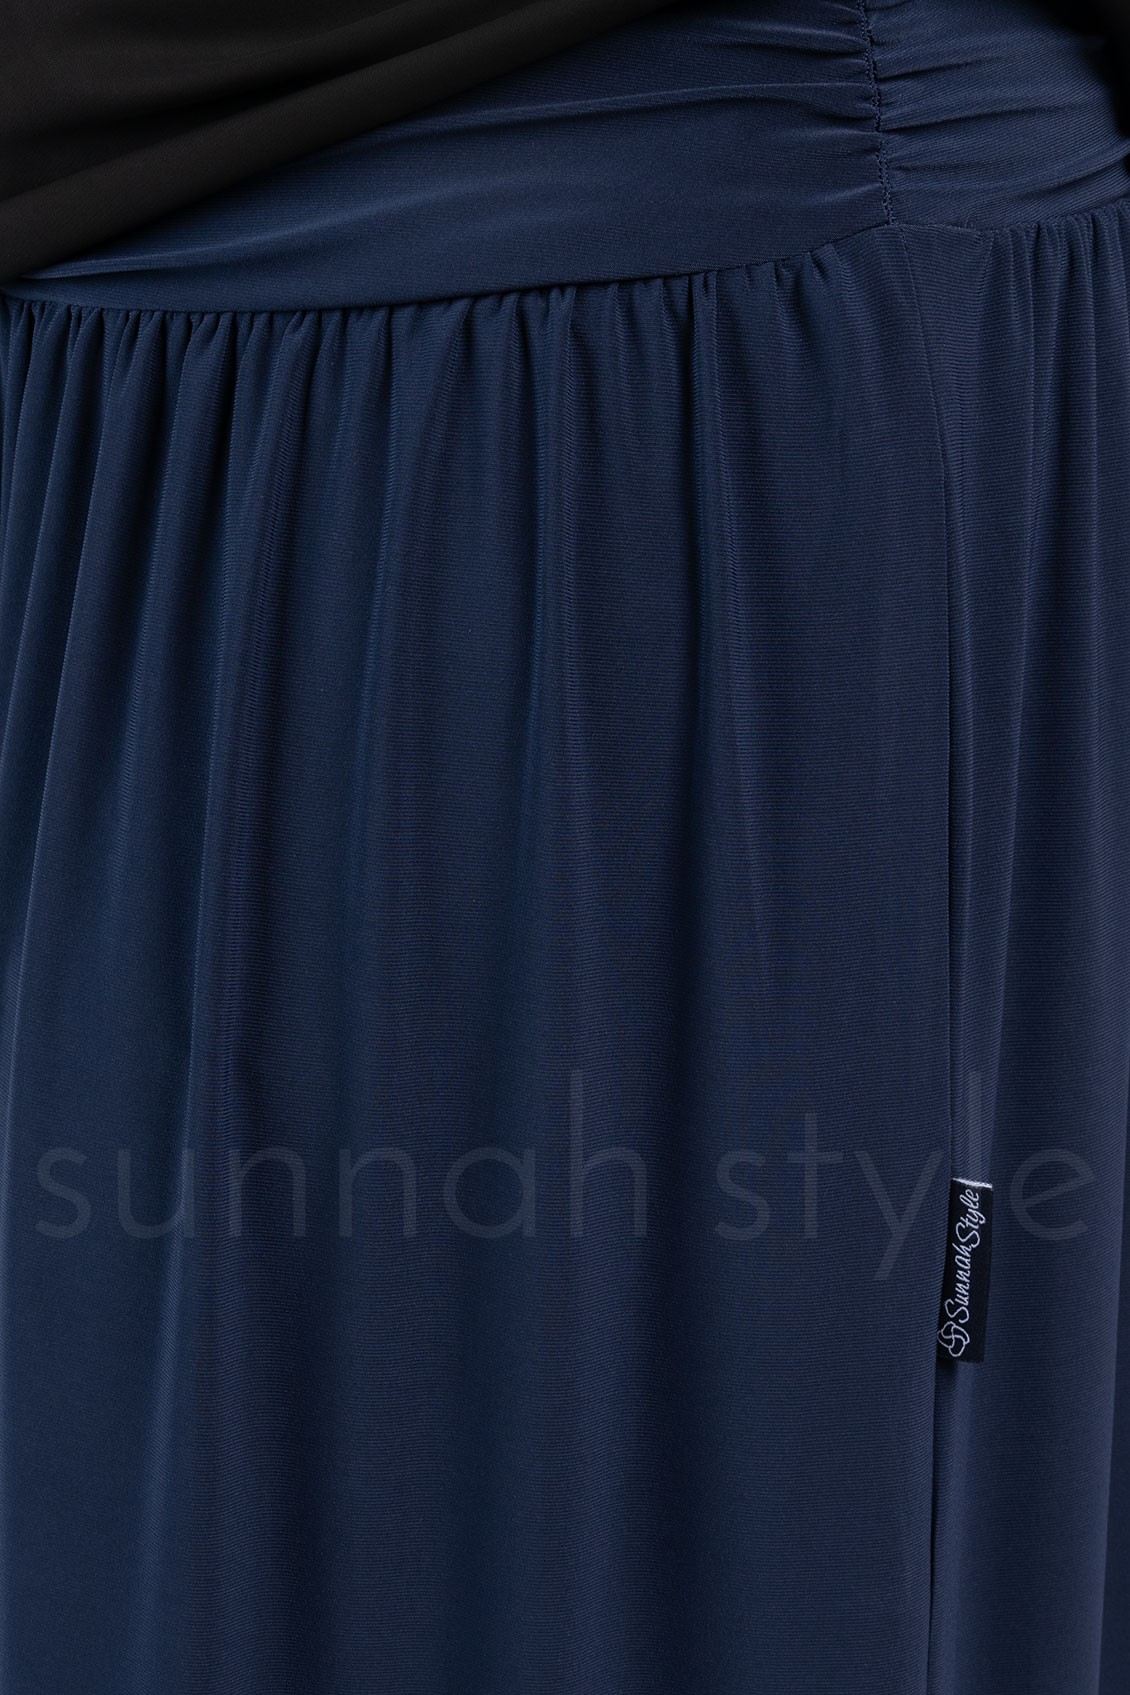 Jersey Maxi Skirt (Navy Blue)